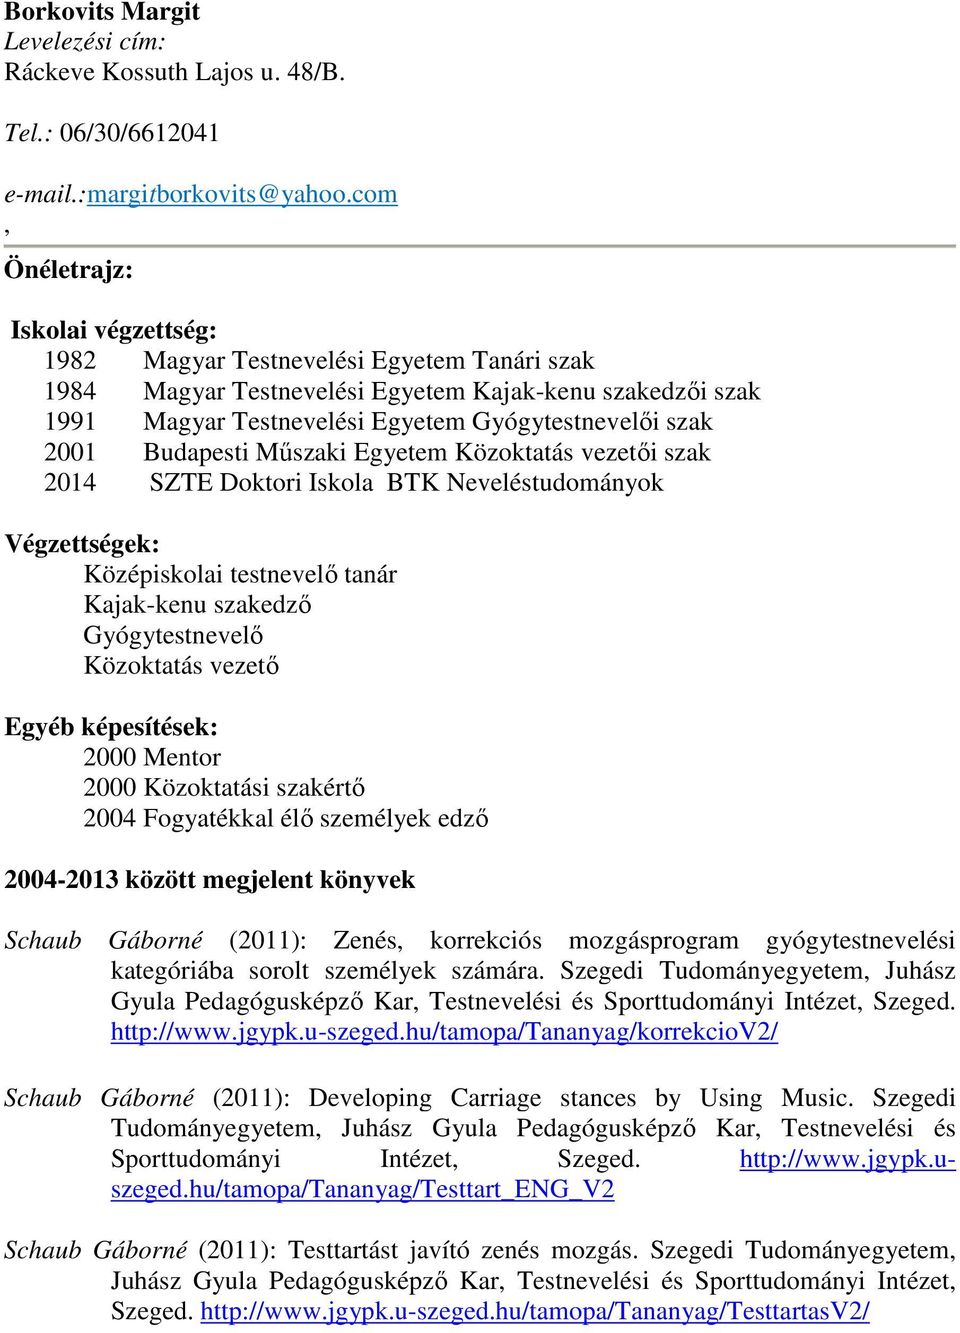 Borkovits Margit Levelezési cím: Ráckeve Kossuth Lajos u. 48/B. Tel.:  06/30/ - PDF Ingyenes letöltés